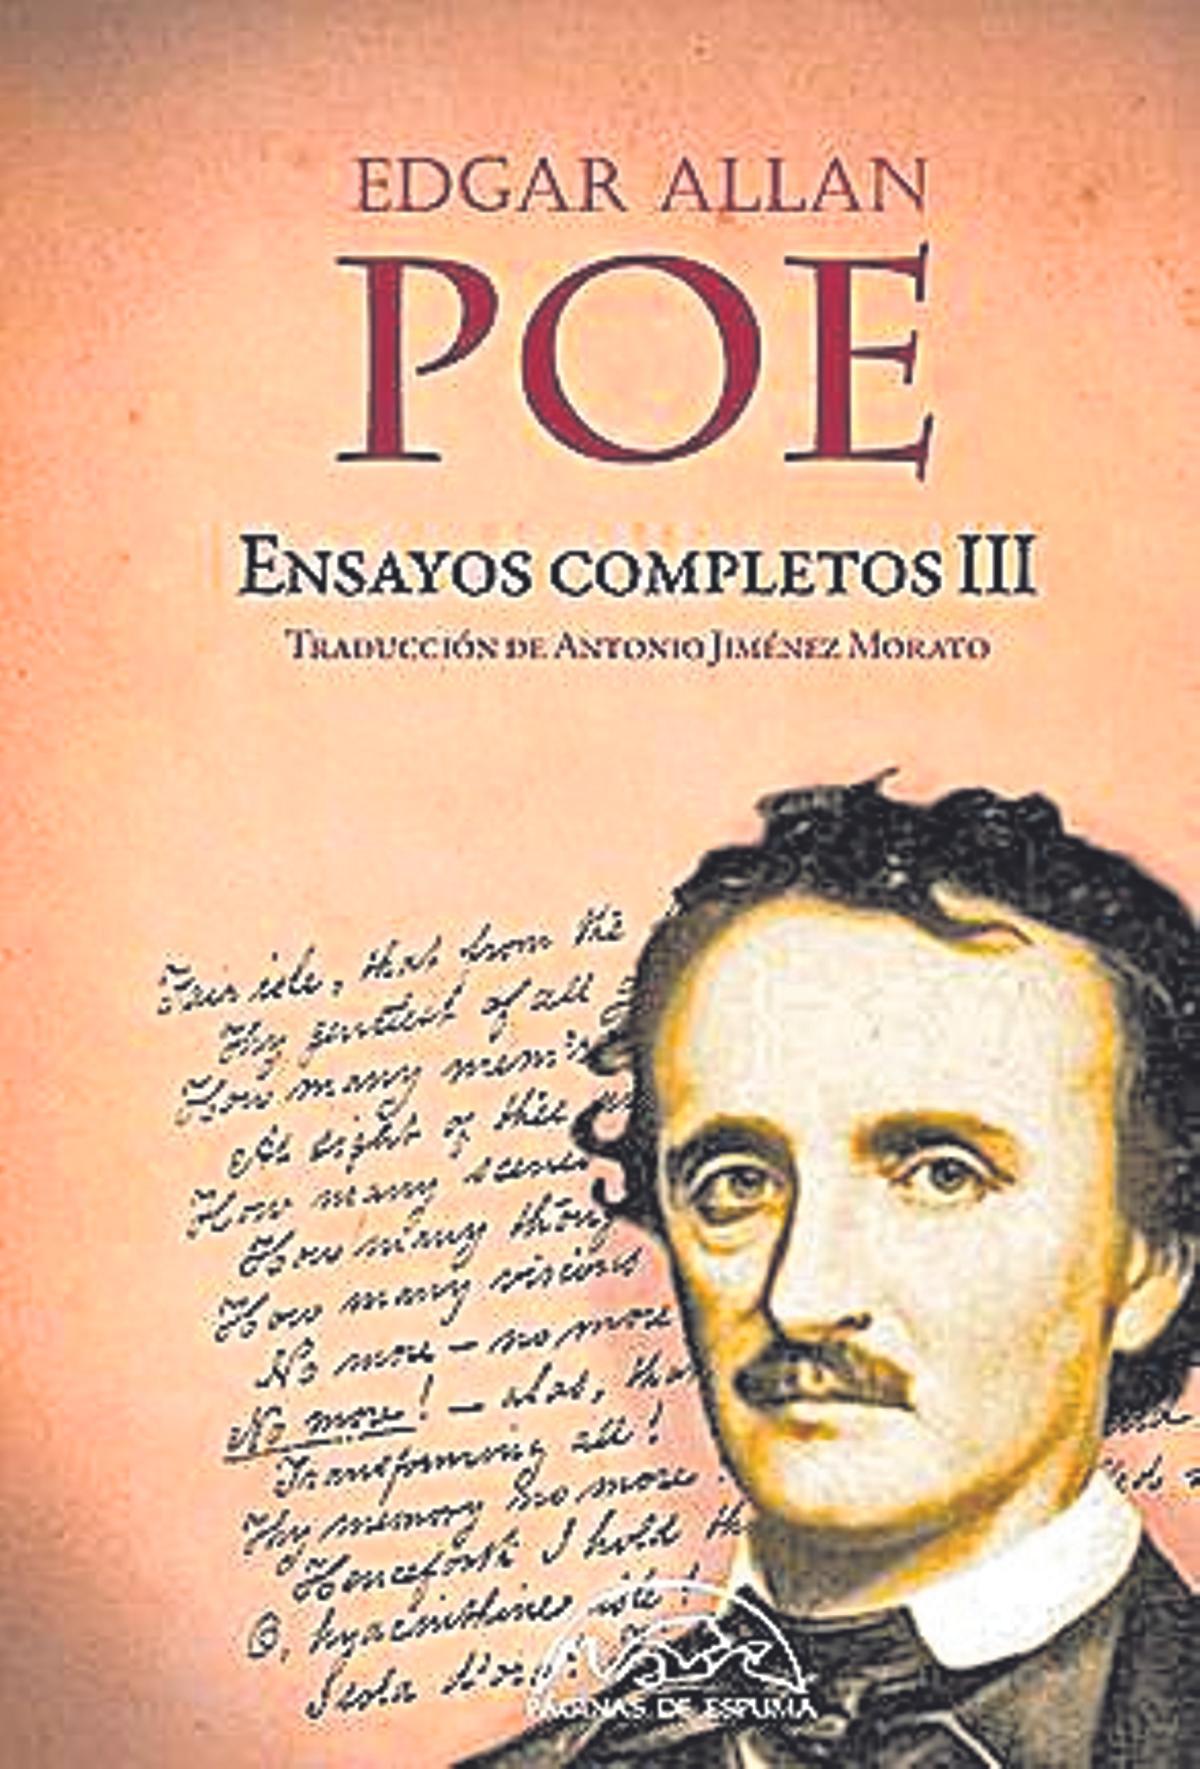 Edgar Allan Poe  Ensayos completos III   Traducción de Antonio   Jiménez Morato  Páginas de Espuma   480 páginas / 35 euros